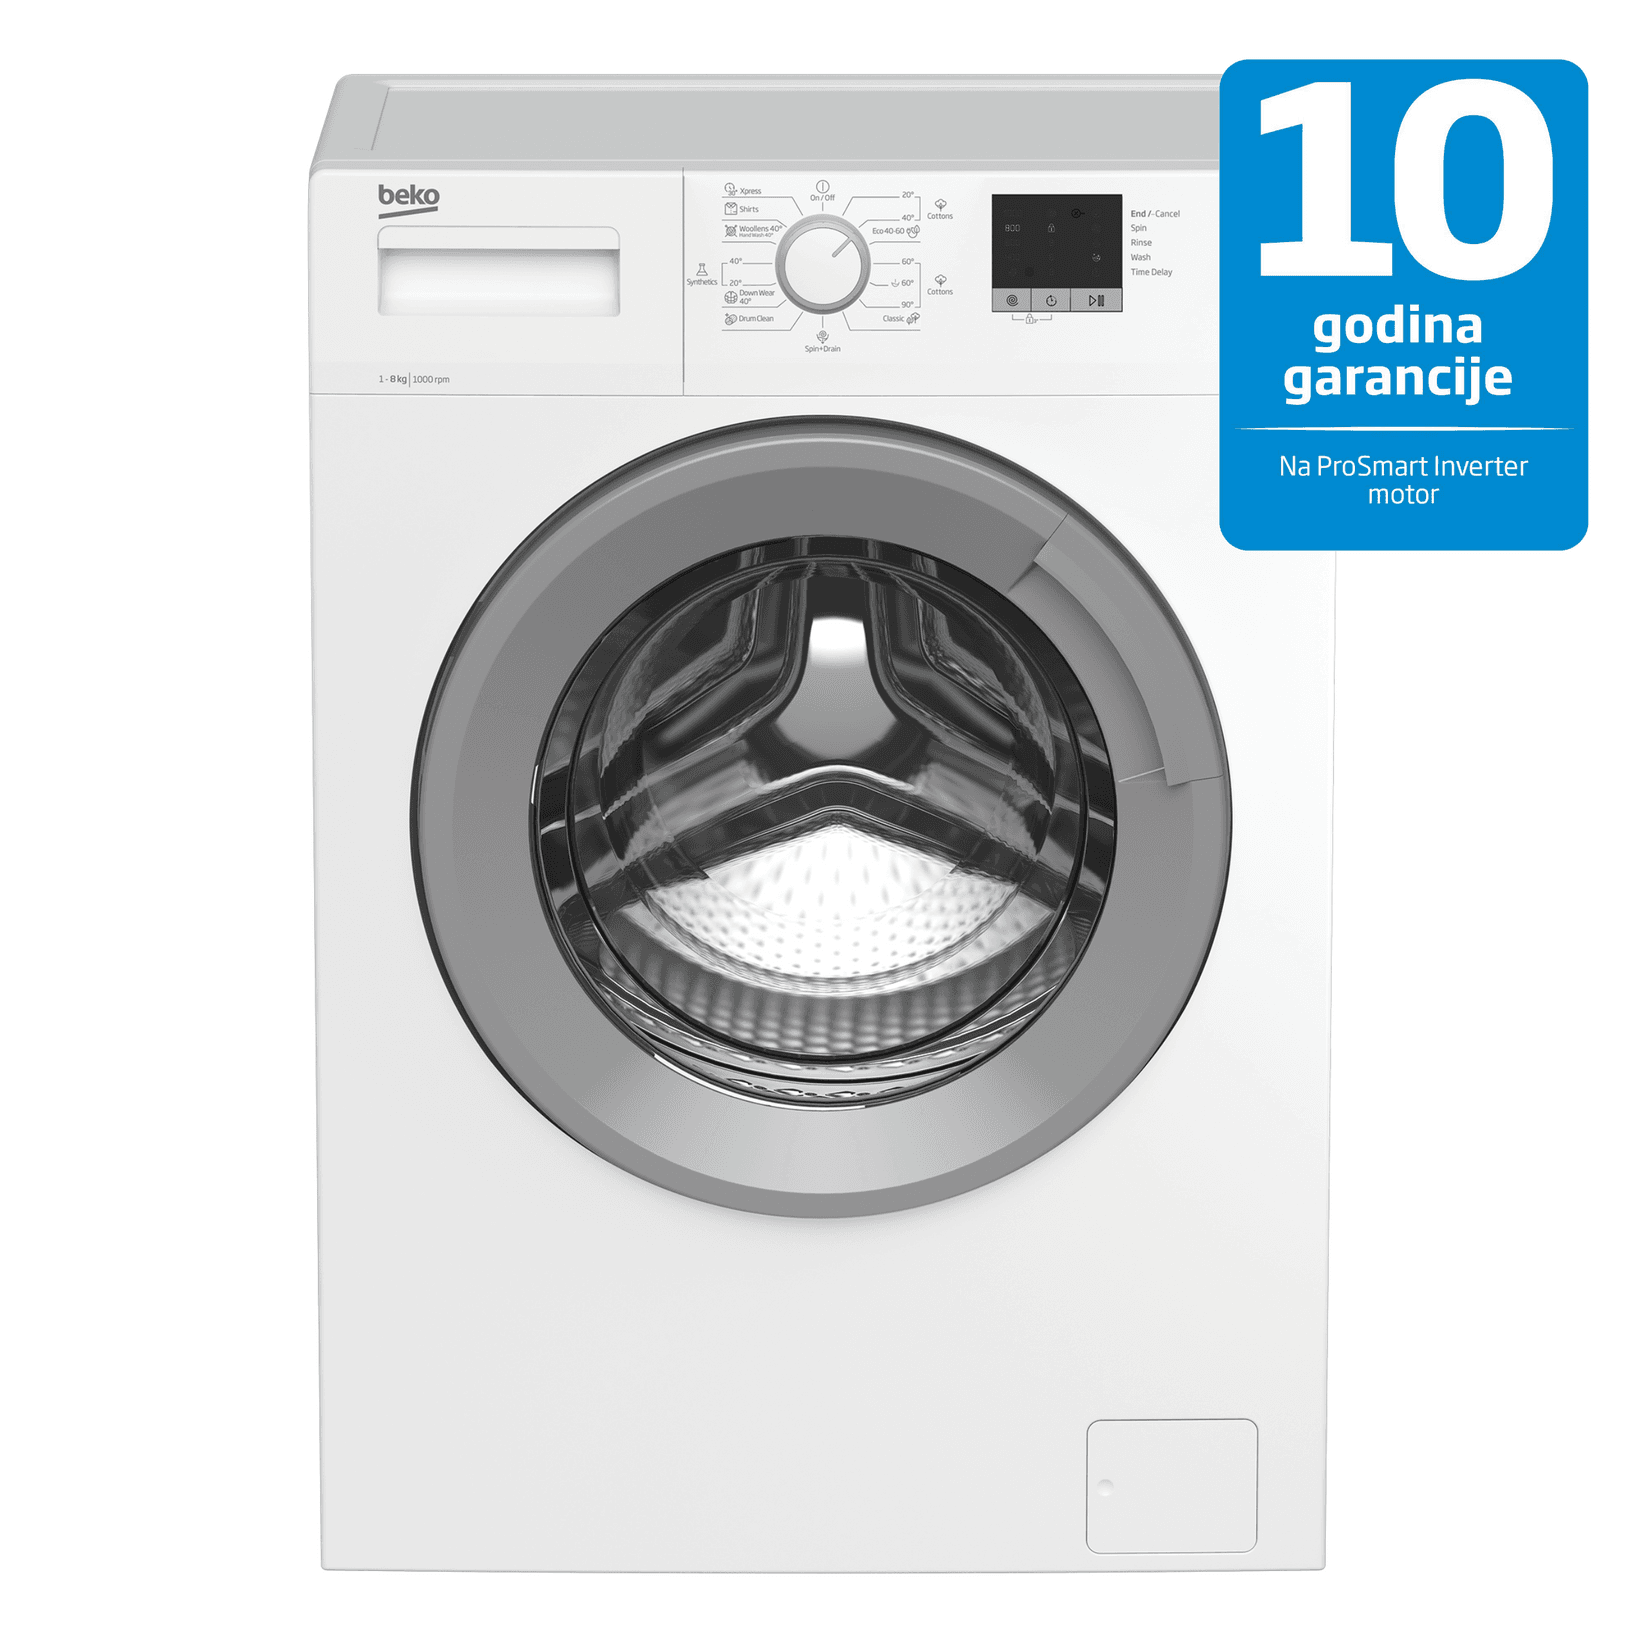 Selected image for Beko WTE 8511 X0 Mašina za pranje veša, 8 kg, ProSmart motor